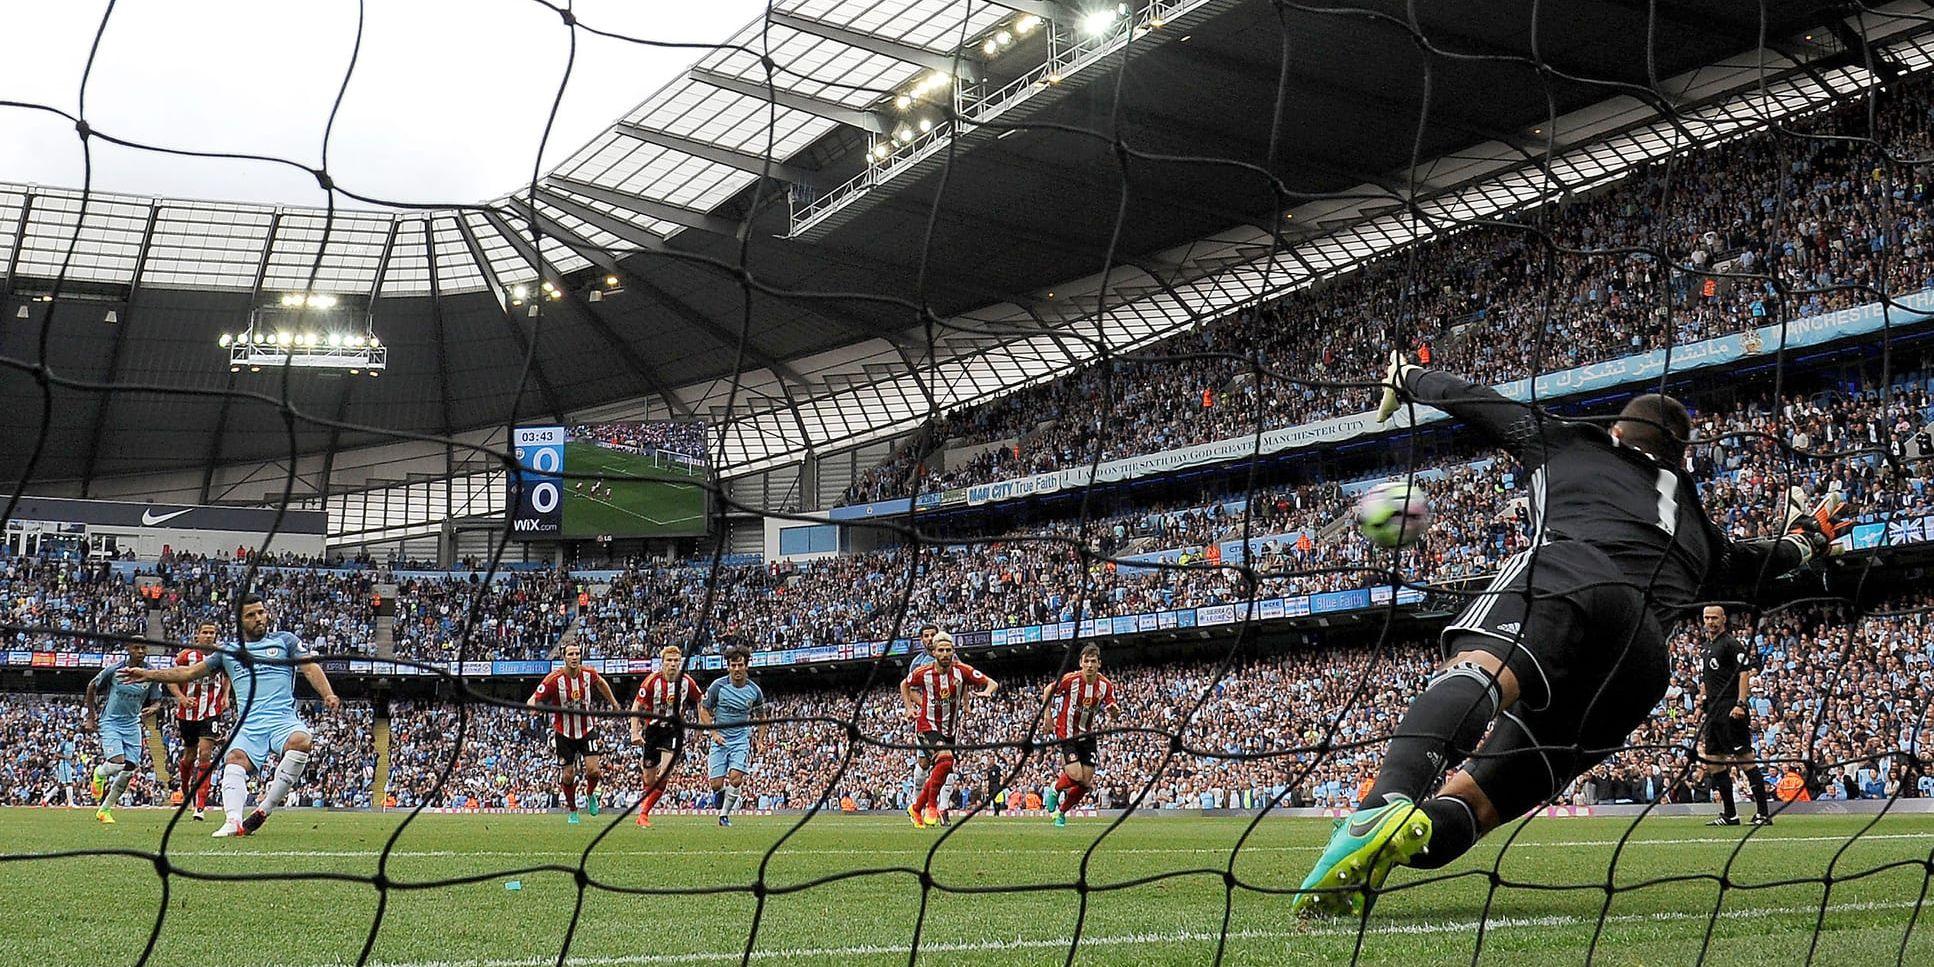 Manchester City's Sergio Aguero gjorde 1–0 på straff när City slog Sunderland med 2–1.